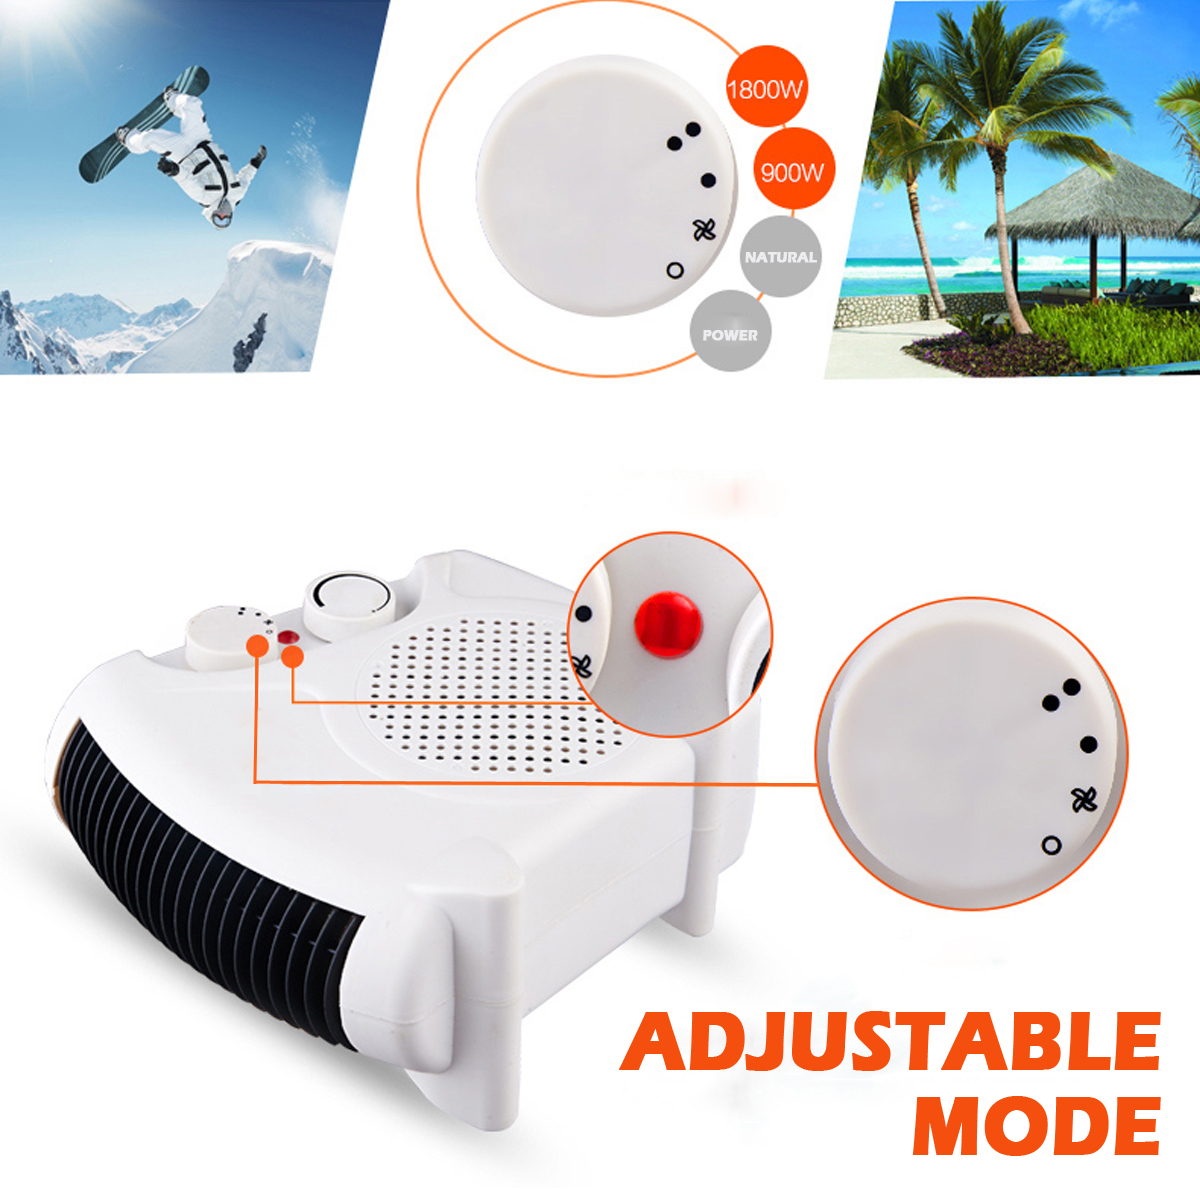 220V-1800W-Mini-Mute-Electric-Heater-3-Speeds-Heat-Cool-Dual-Use-Fan-Portable-Home-Office-Desktop-Wa-1630360-5